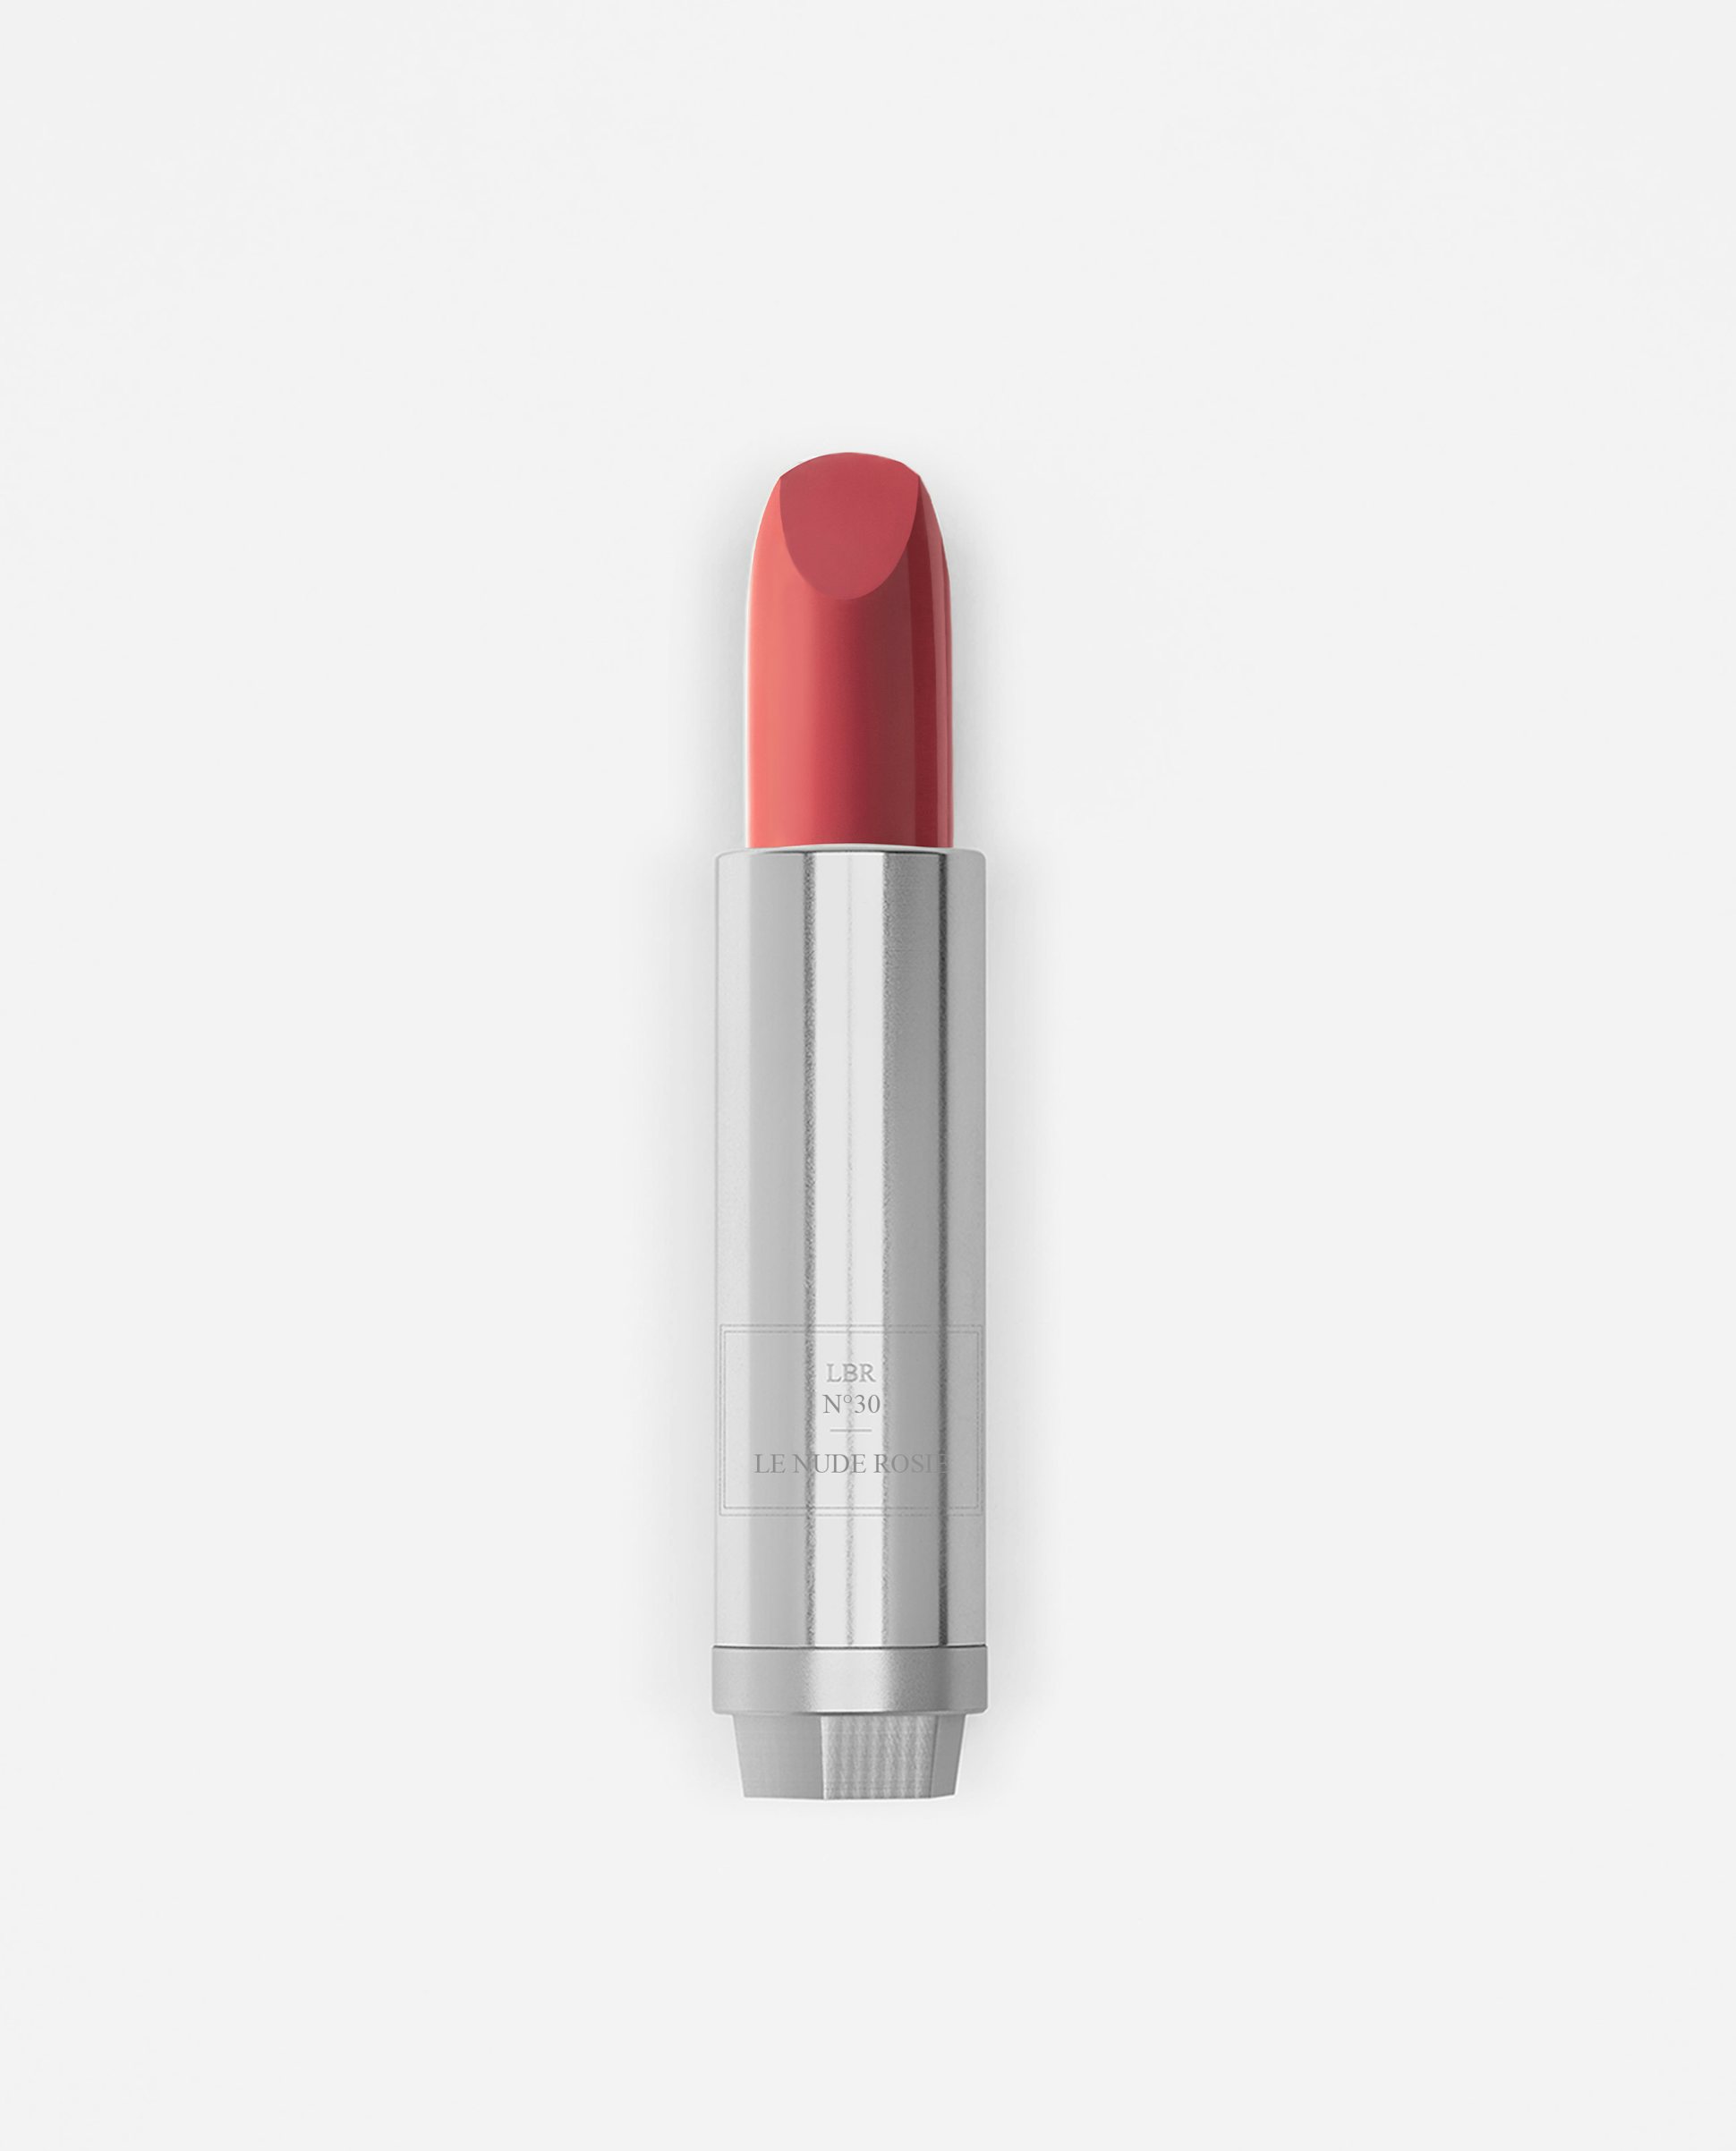 La bouche rouge Le Nude Rosie lipstick in metal refill